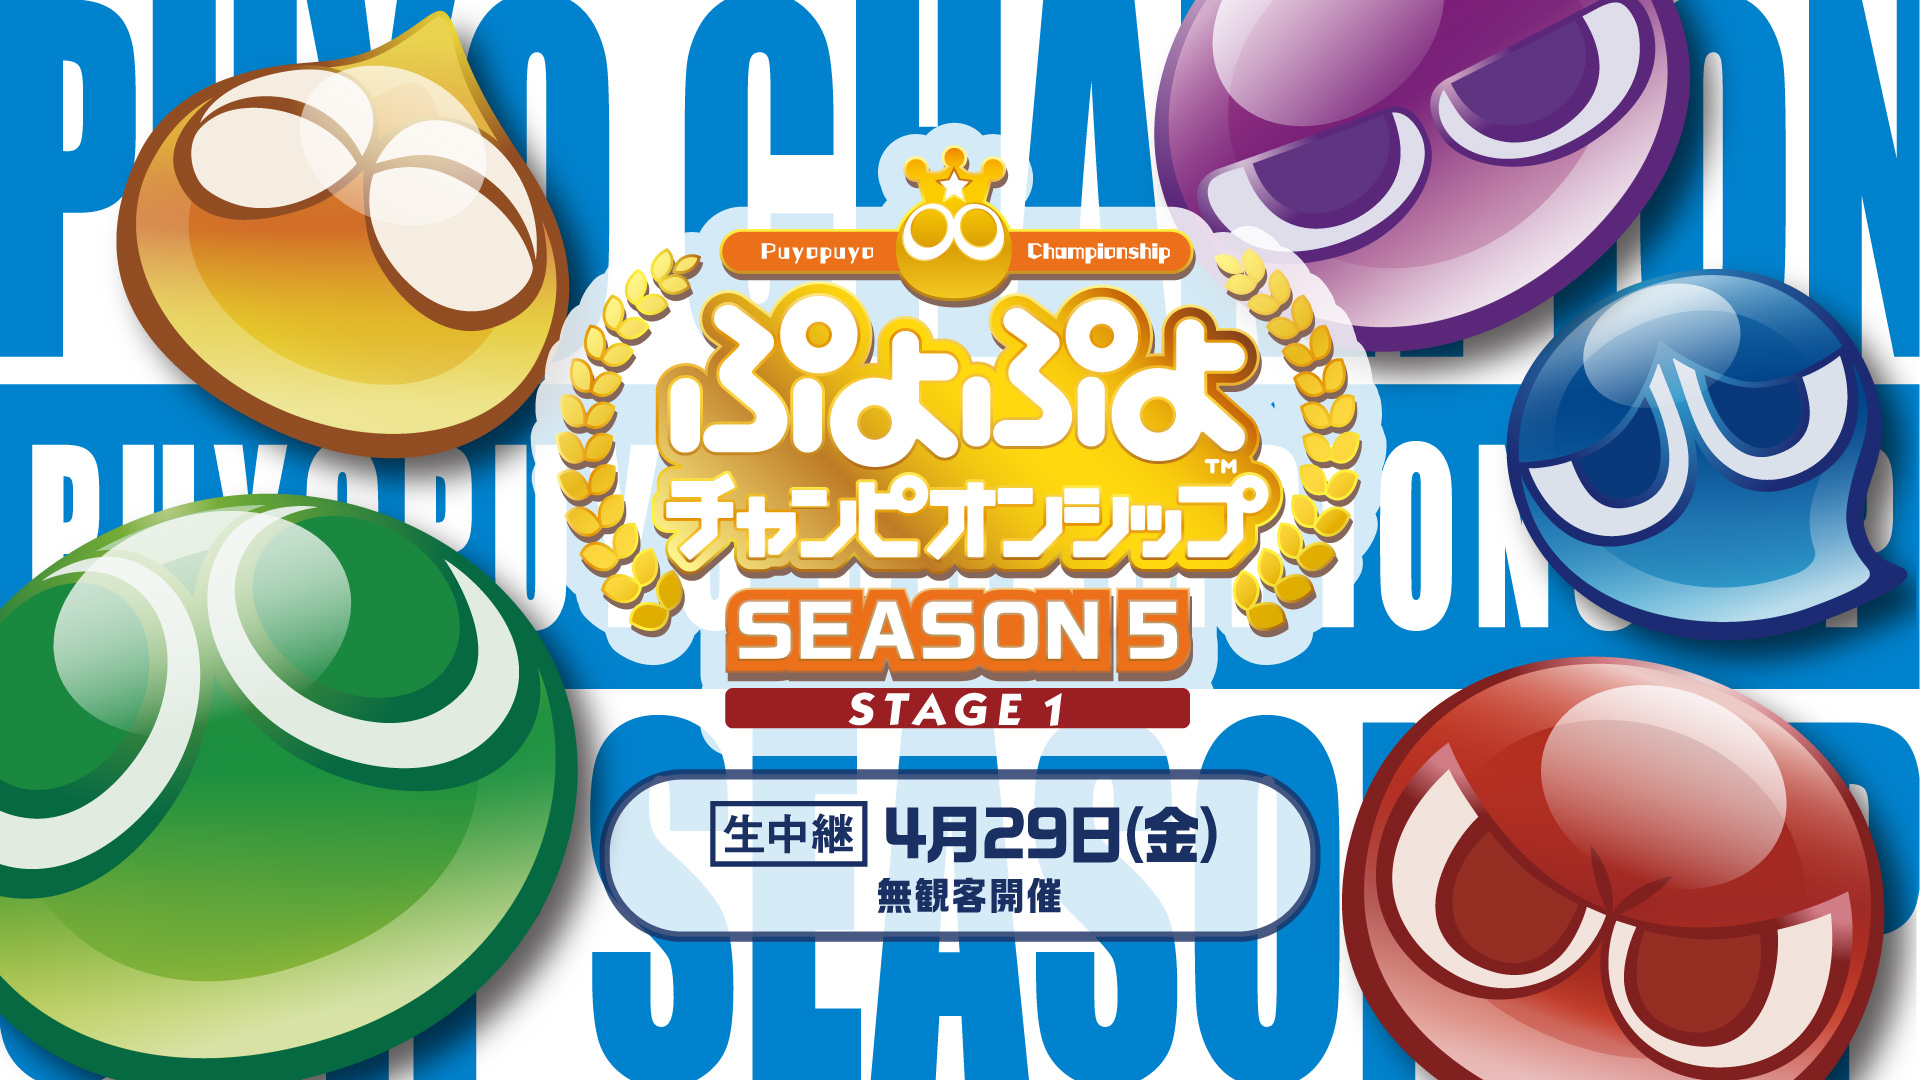 ぷよぷよ」のプロ選手が参加する「ぷよぷよチャンピオンシップ SEASON5